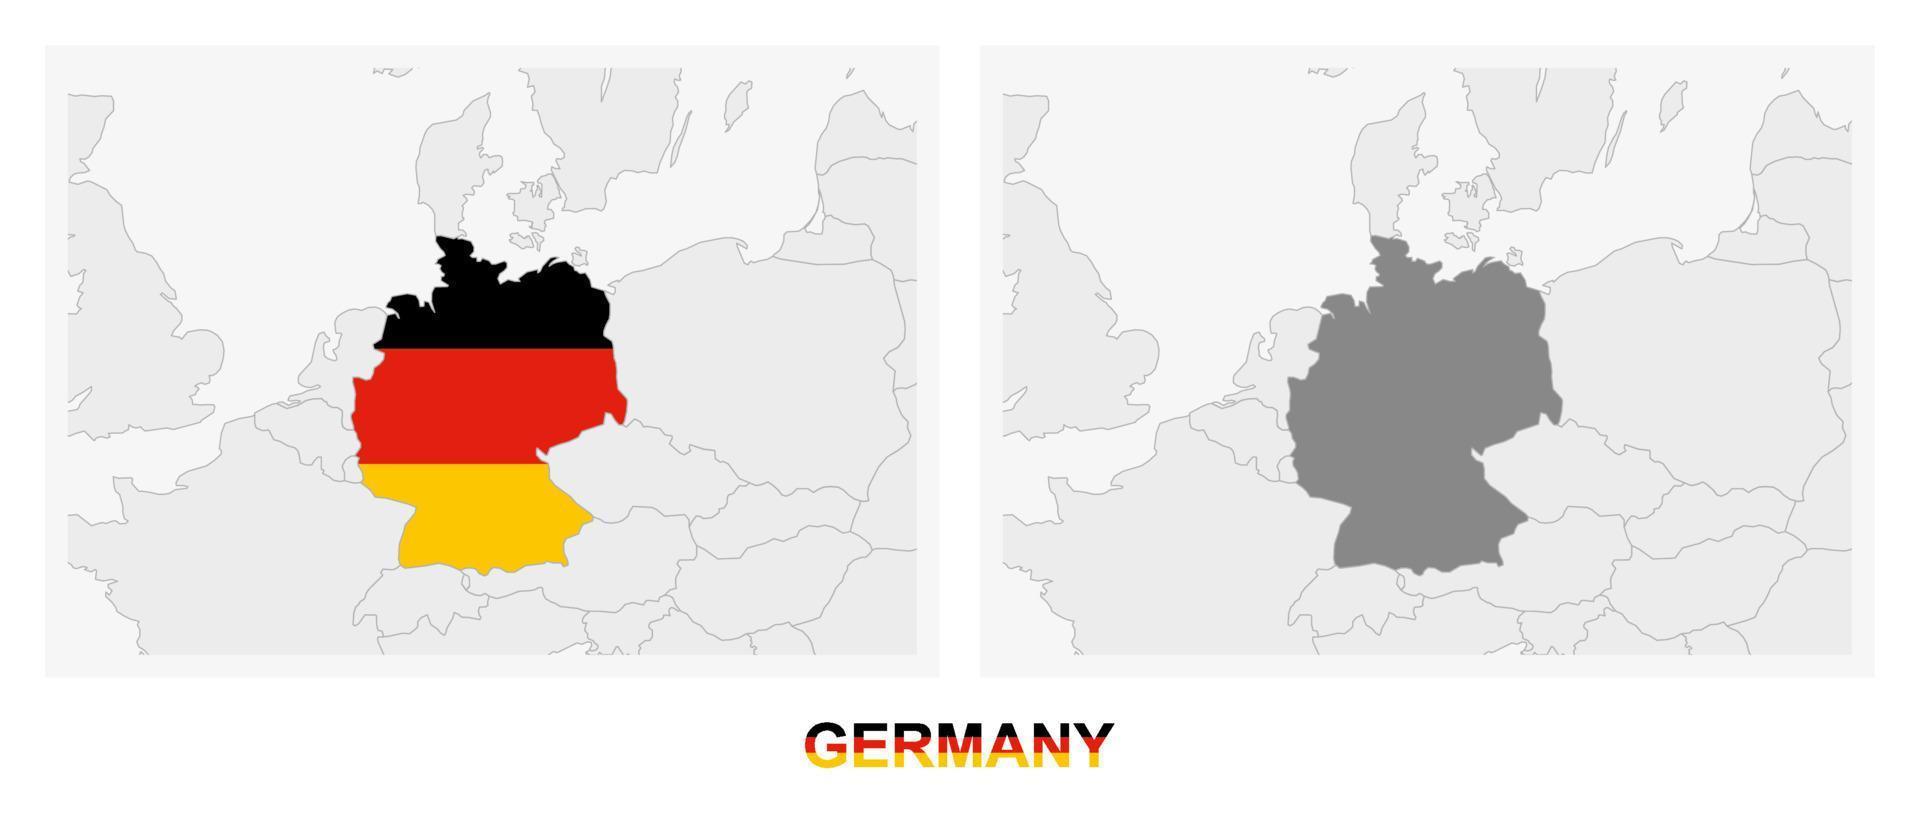 zwei versionen der deutschlandkarte, mit der deutschlandflagge und dunkelgrau hervorgehoben. vektor